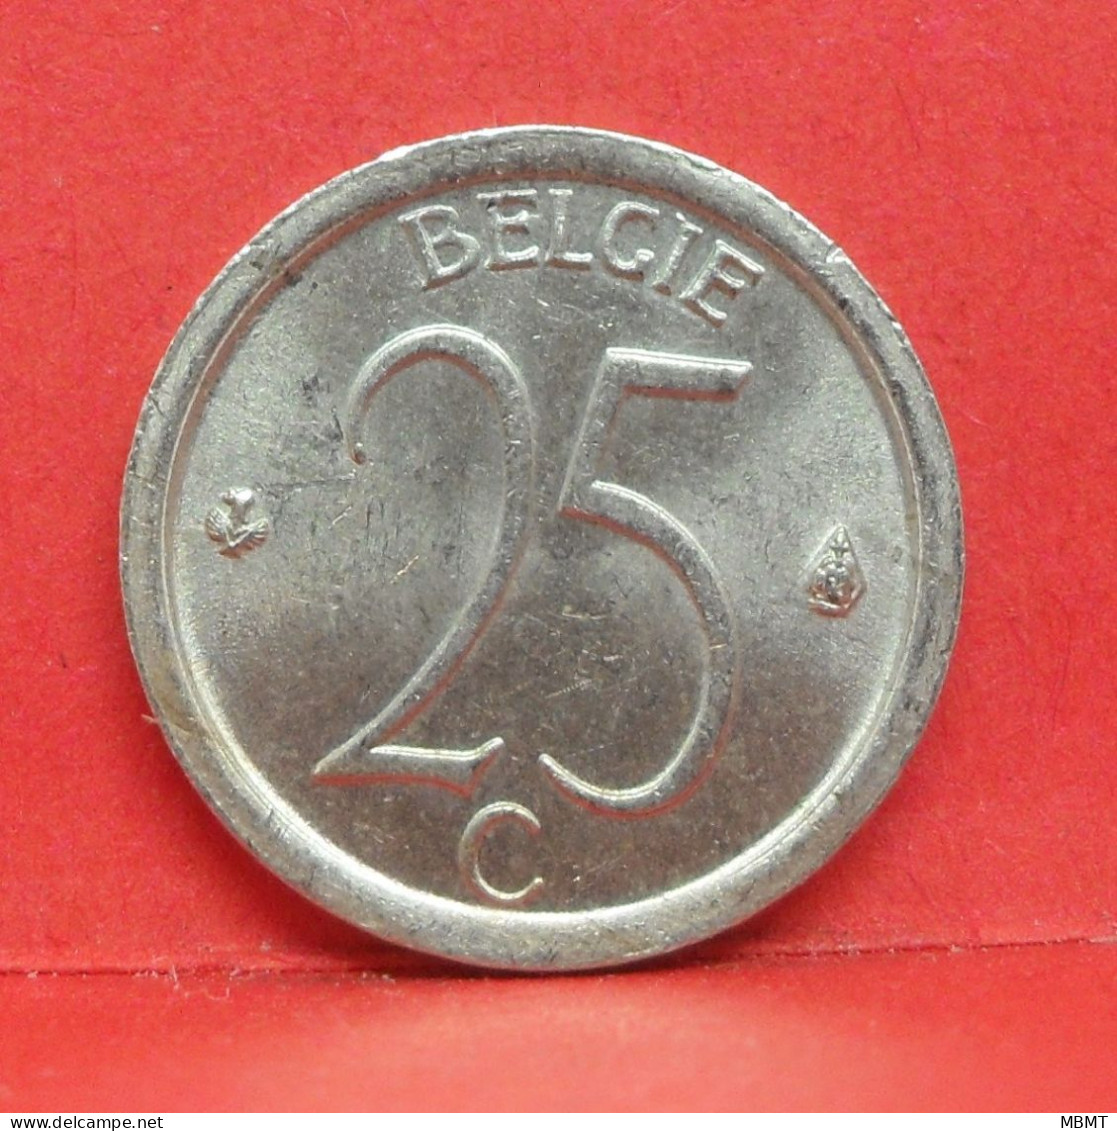 25 Centimes 1969 - TTB - Pièce Monnaie Belgie - Article N°1866 - 25 Cent